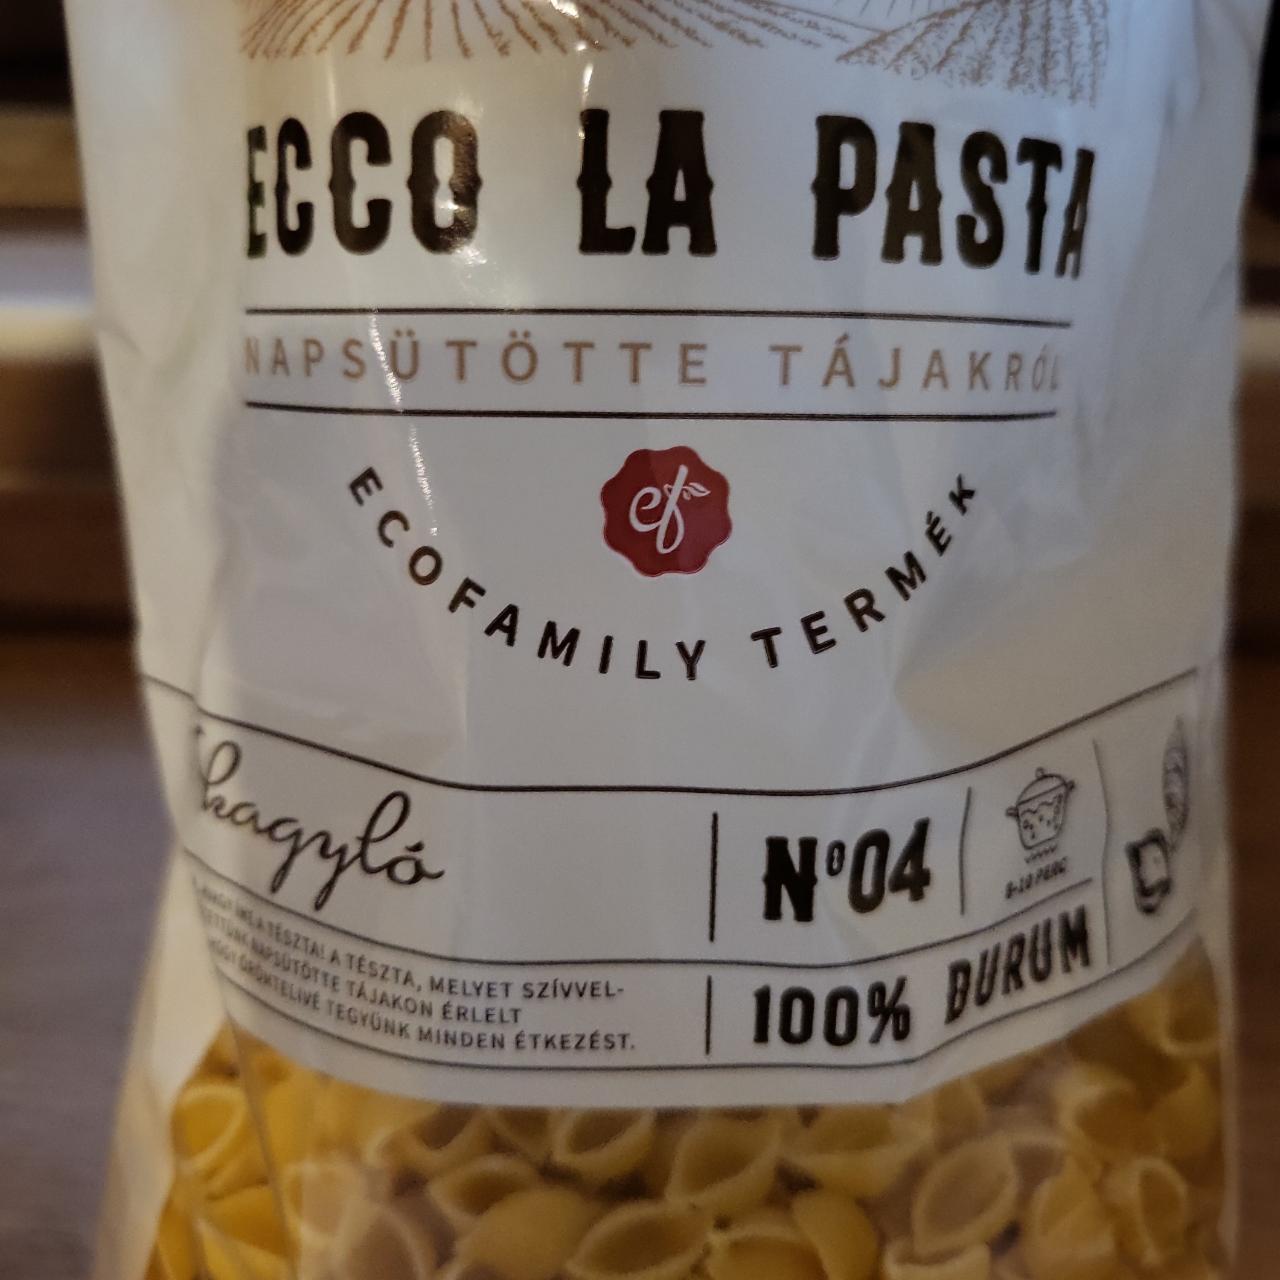 Képek - Ecco la Pasta 100% durum kagylótészta